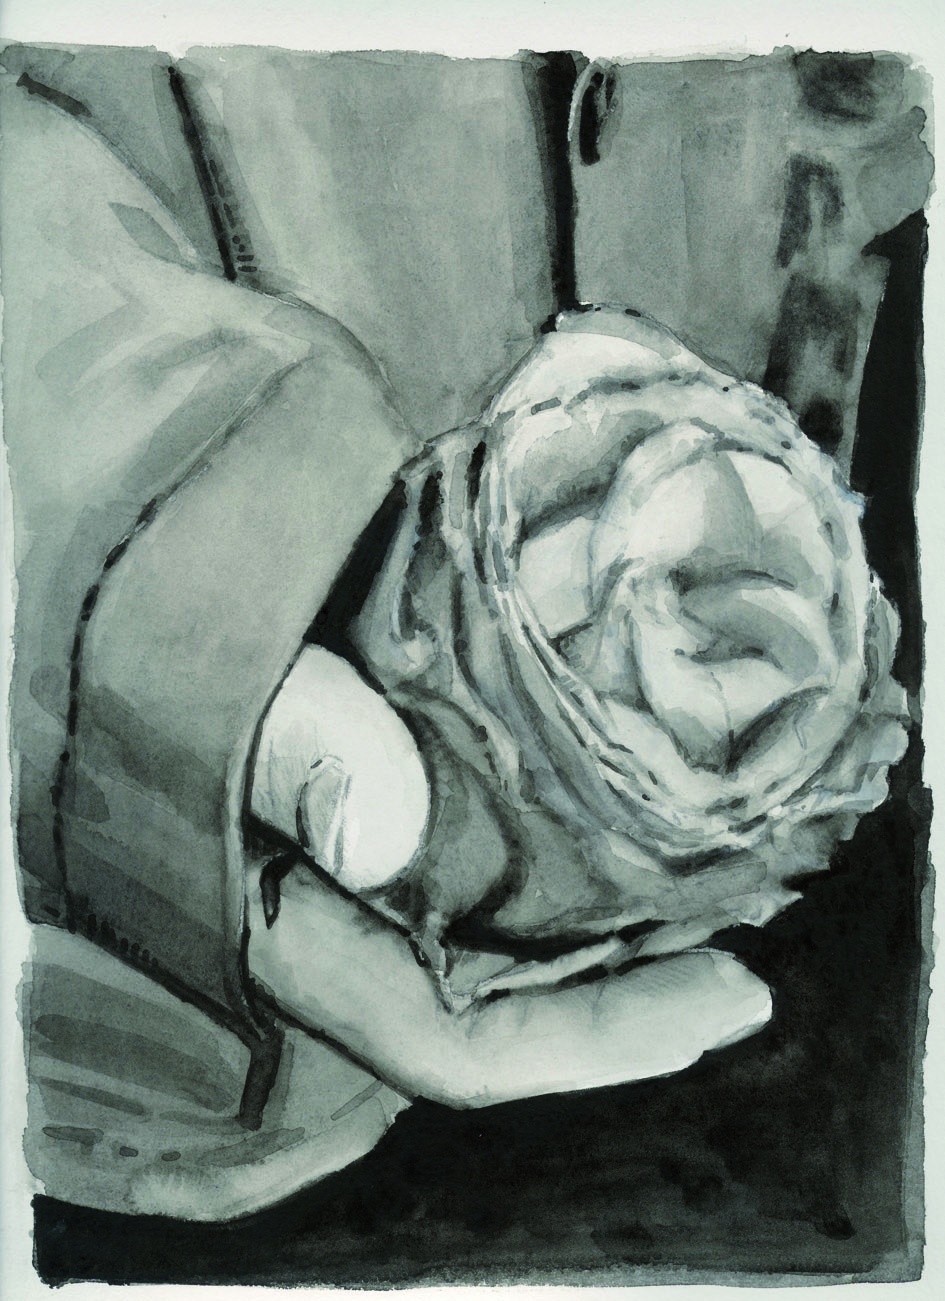 Eine Rosenblüte wird in einer Hand gehalten.